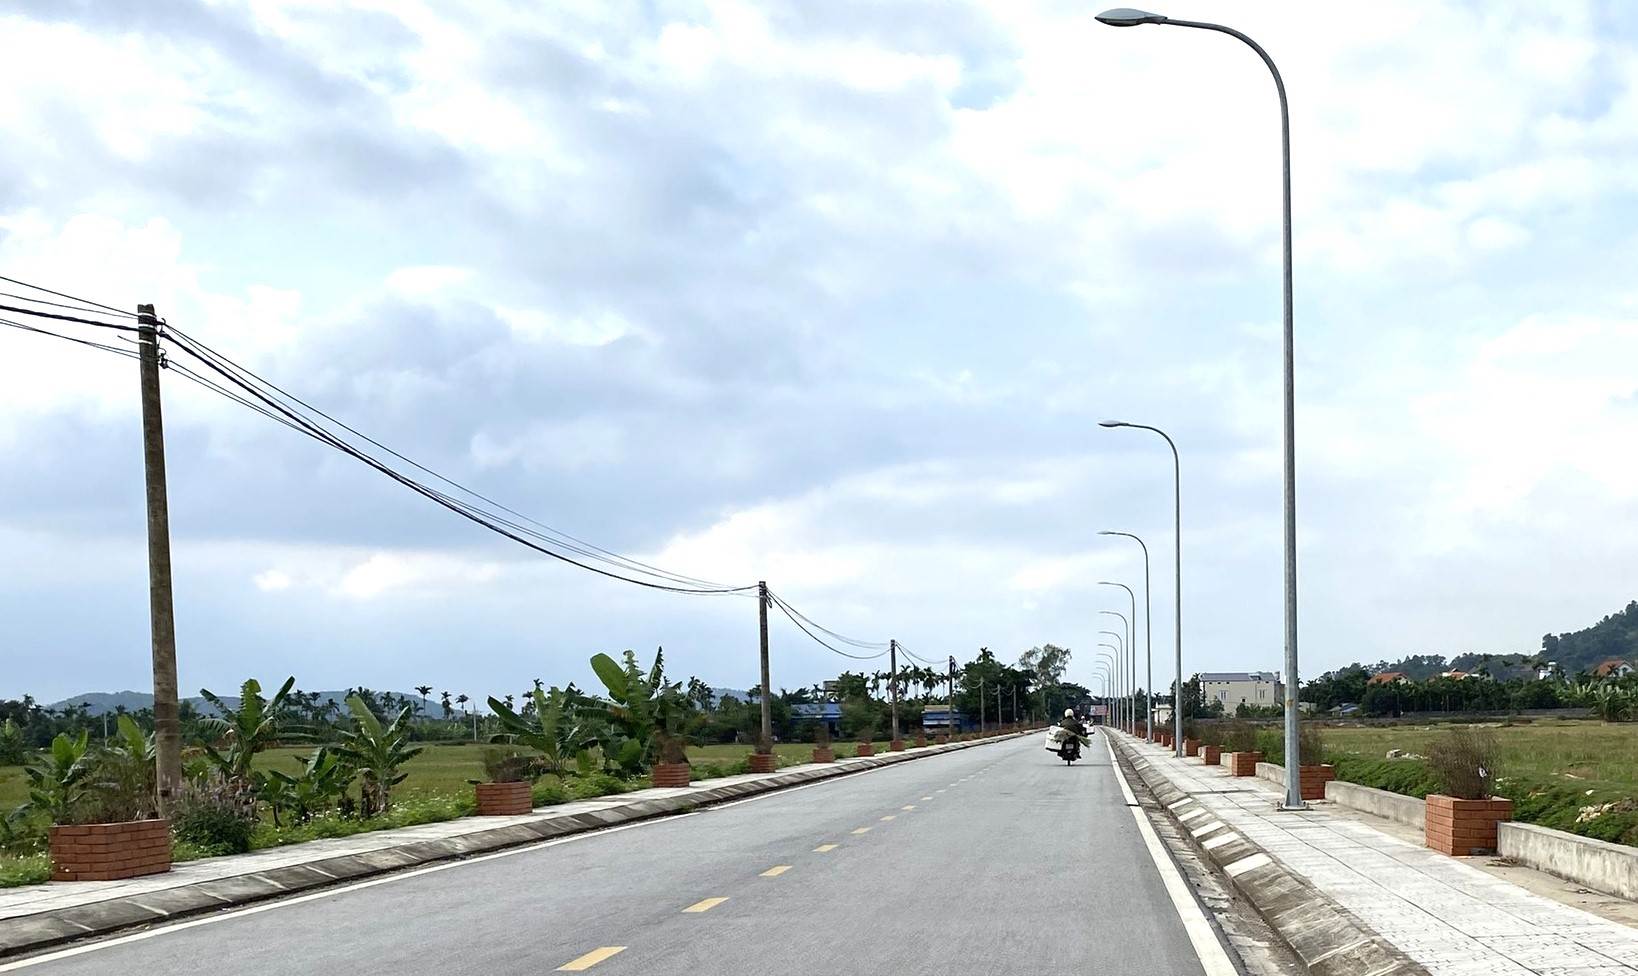 Đường nông thôn mới kiểu mẫu qua xã Lưu Kiếm mới đi vào hoạt động từ năm 2022. Ảnh: Bạn đọc cung cấp